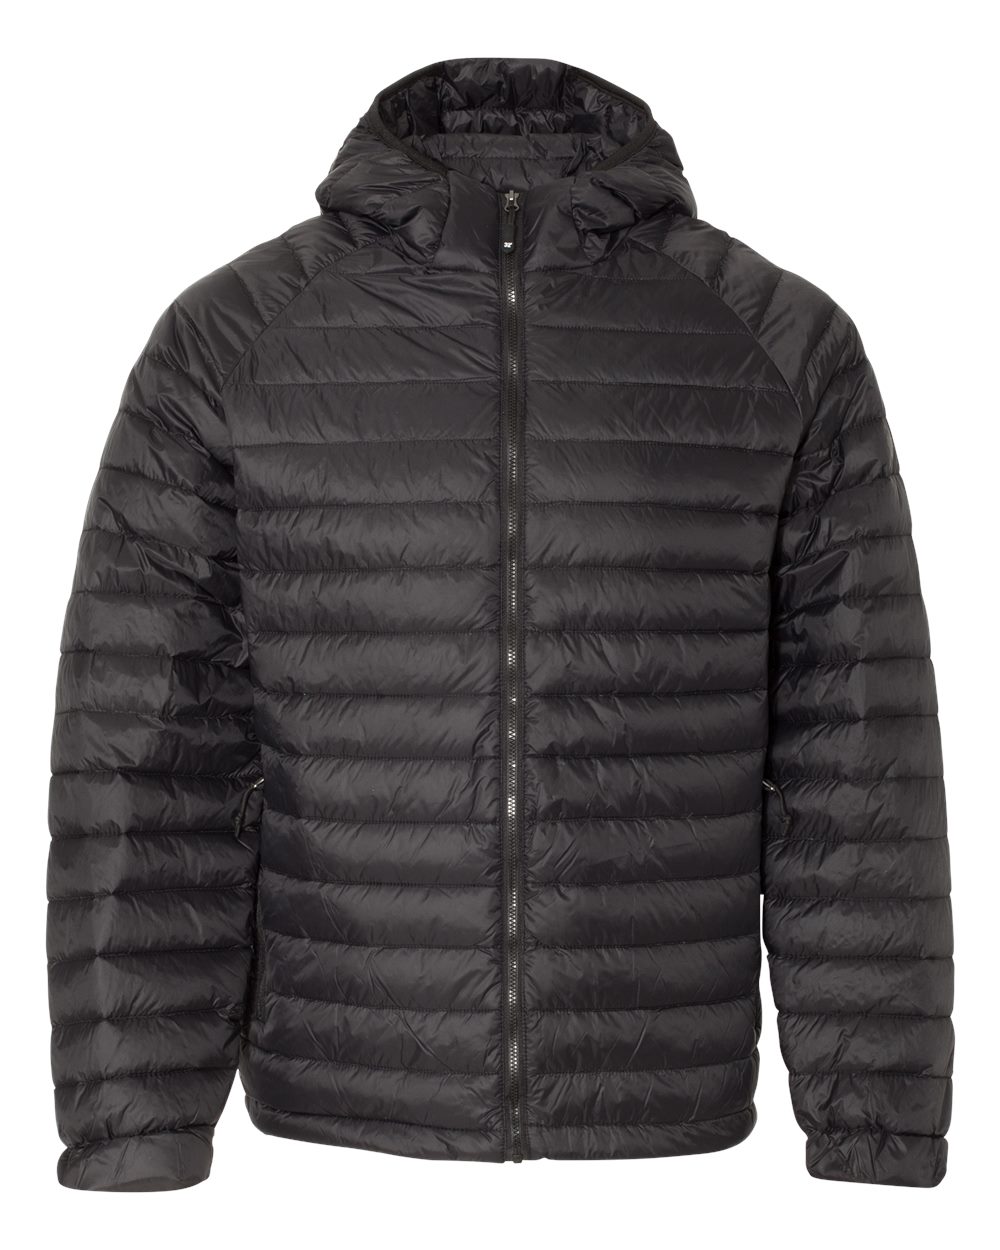 Weatherproof 17602 - 32 Degrees Hooded Packable Down Jacket